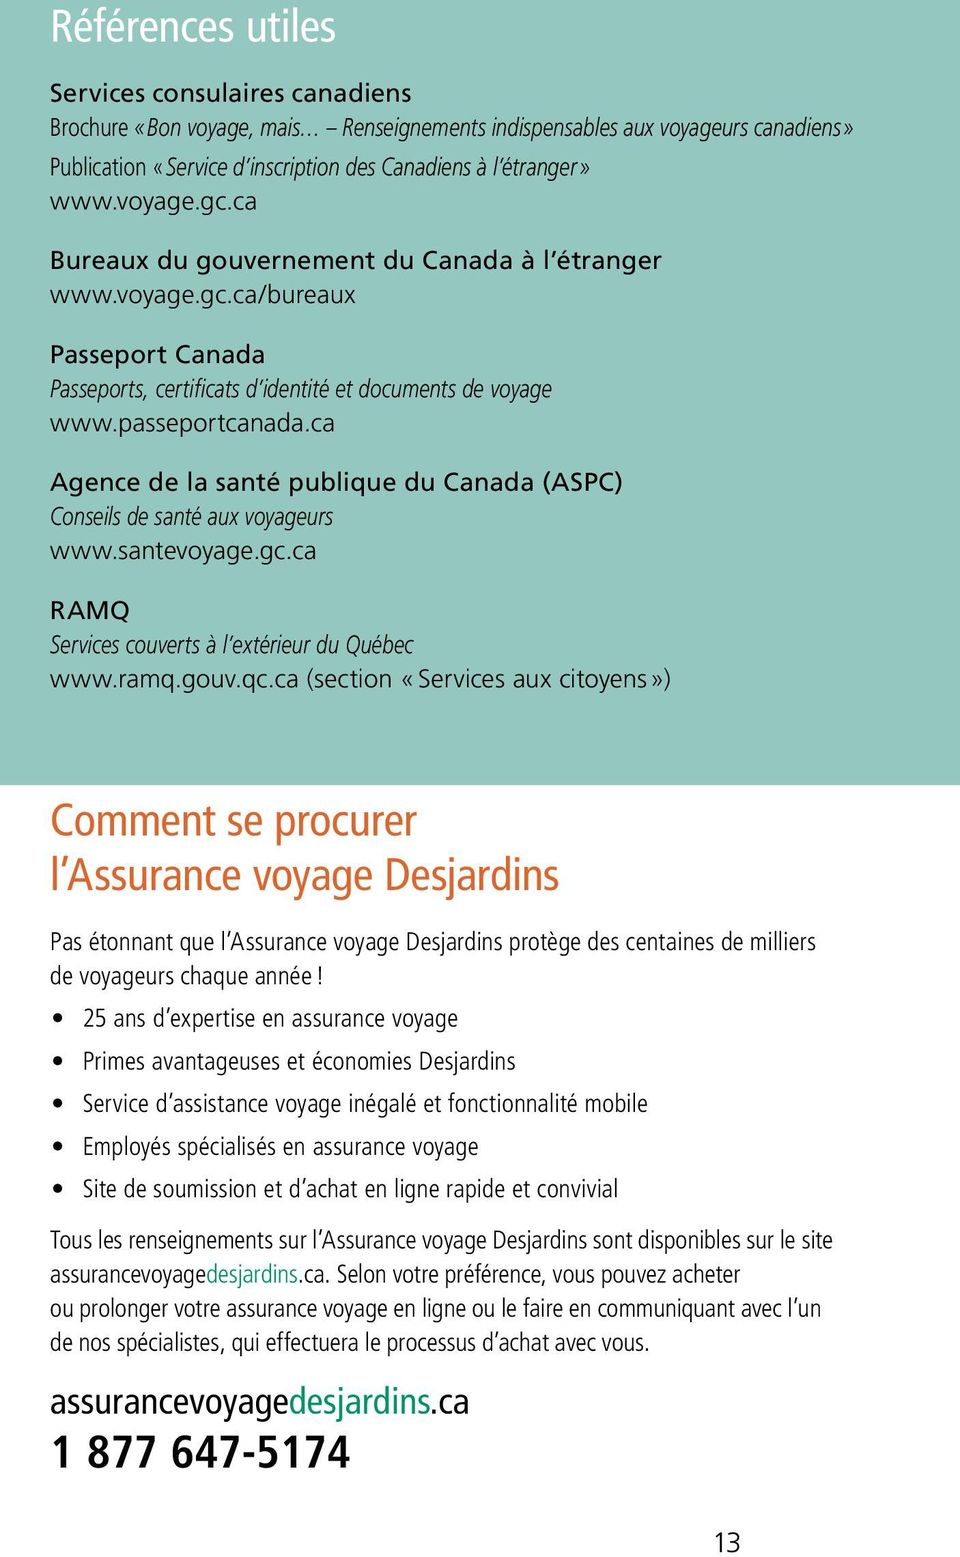 ca Agence de la santé publique du Canada (ASPC) Conseils de santé aux voyageurs www.santevoyage.gc.ca RAMQ Services couverts à l extérieur du Québec www.ramq.gouv.qc.